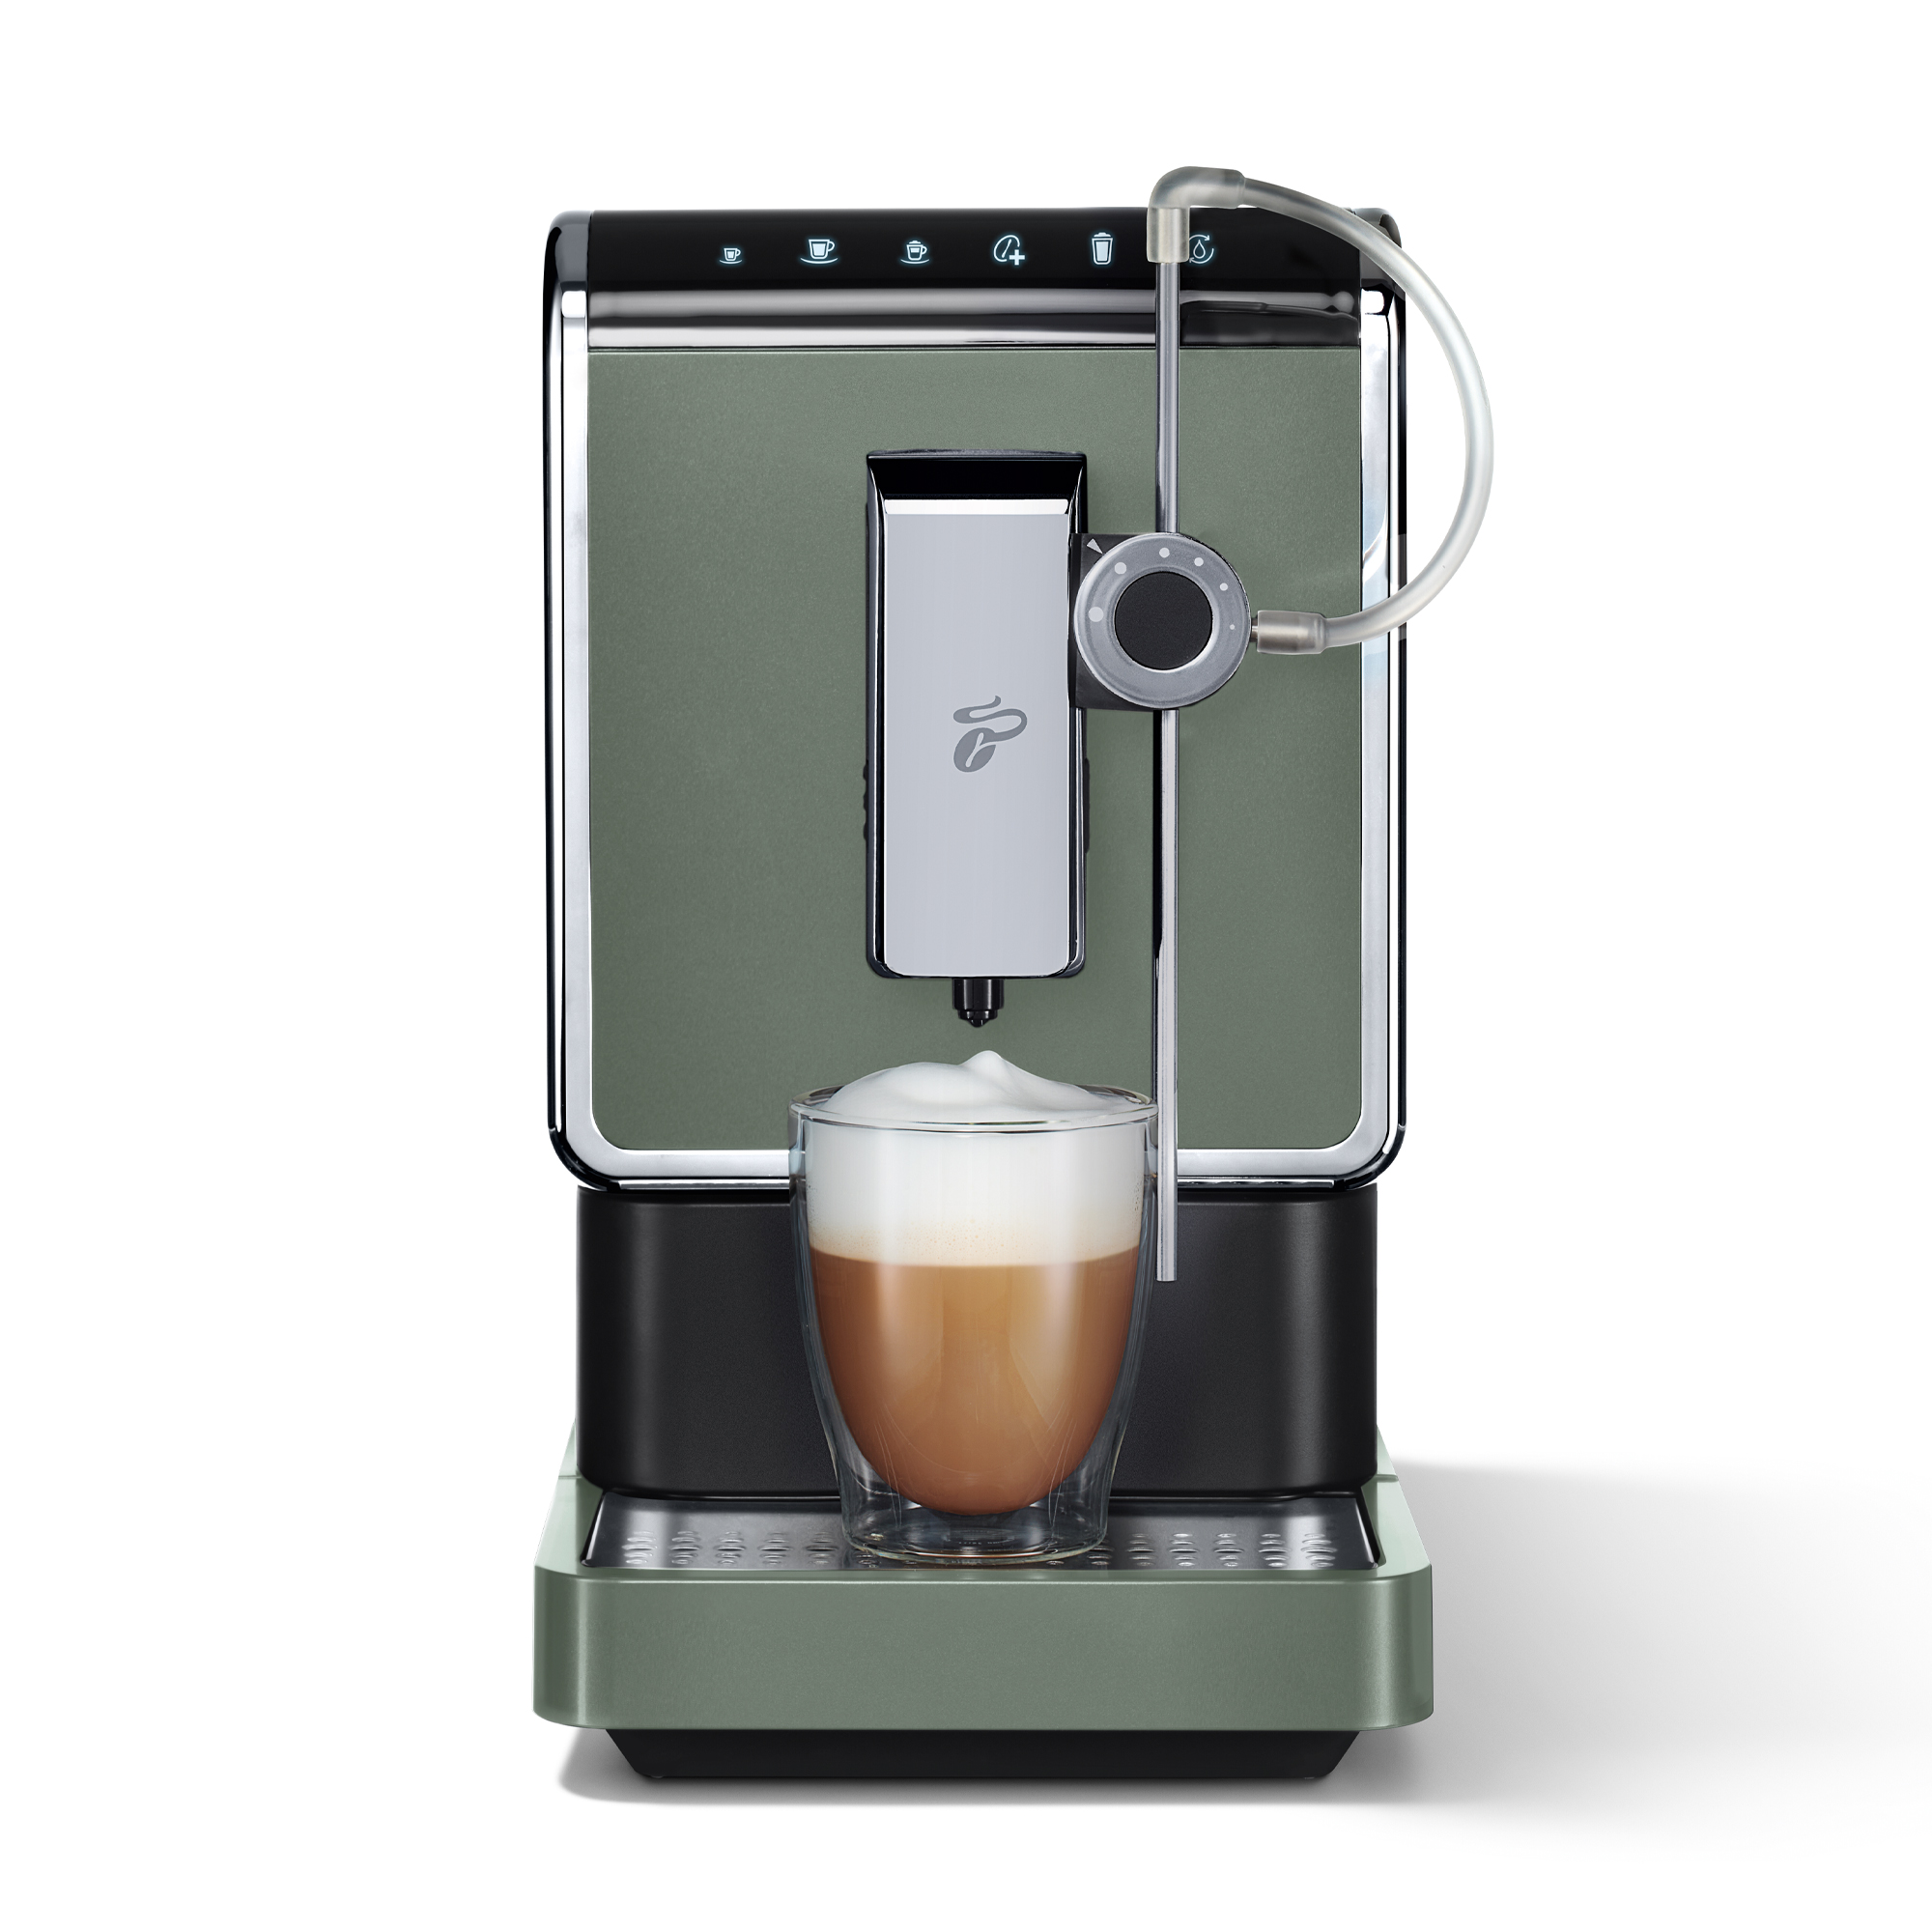 Esperto Caffè Pro Metallic Crema, für Milchspezialitäten Mint TCHIBO Kaffeevollautomat Espresso und